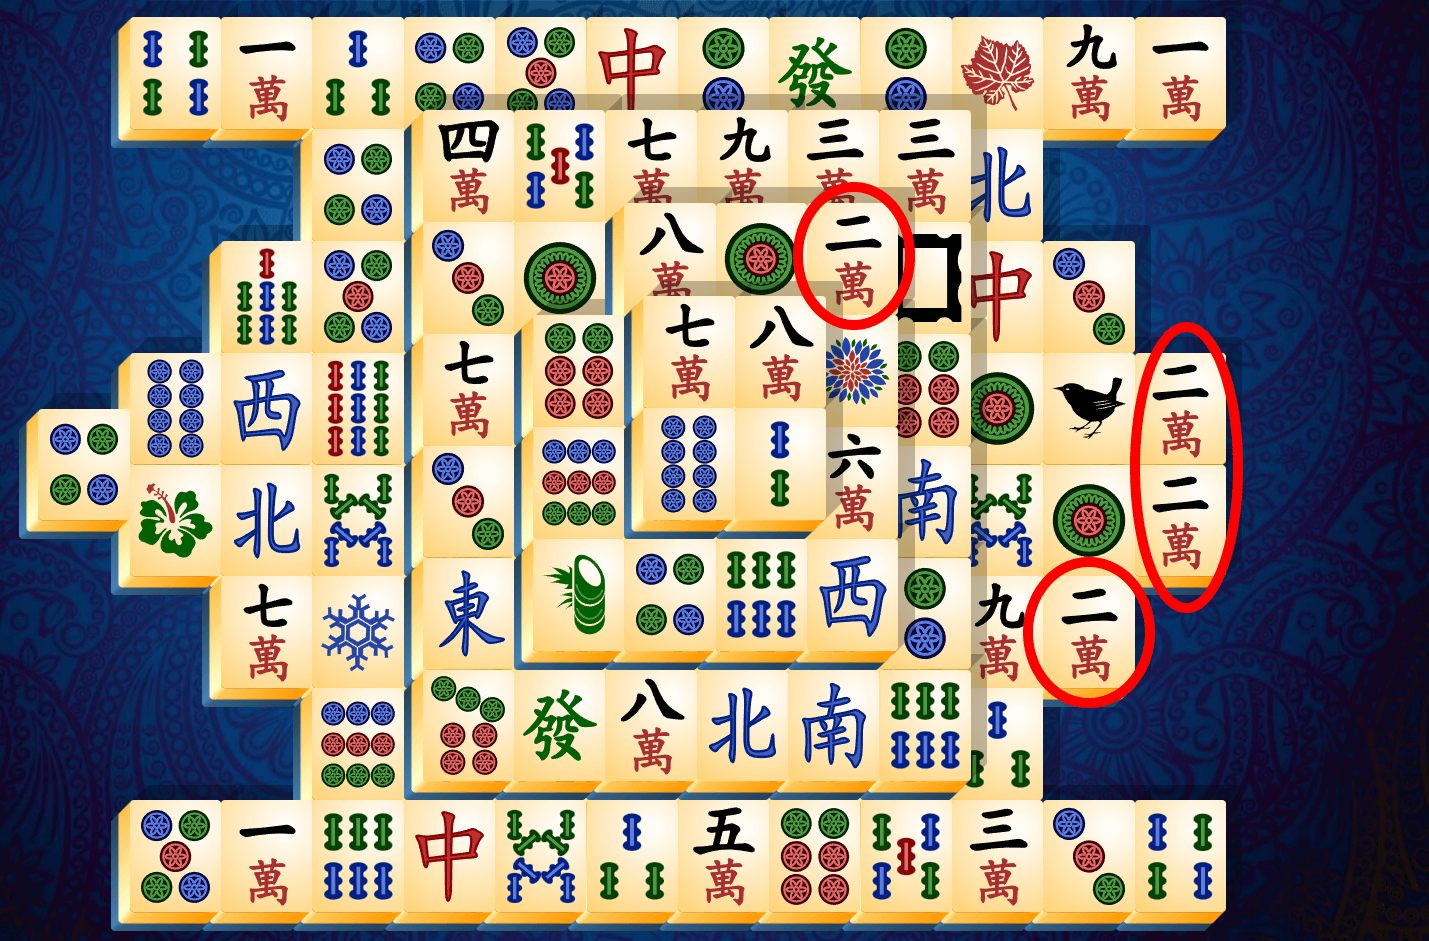 Anleitung zu Mahjong Solitär, Schritt 3